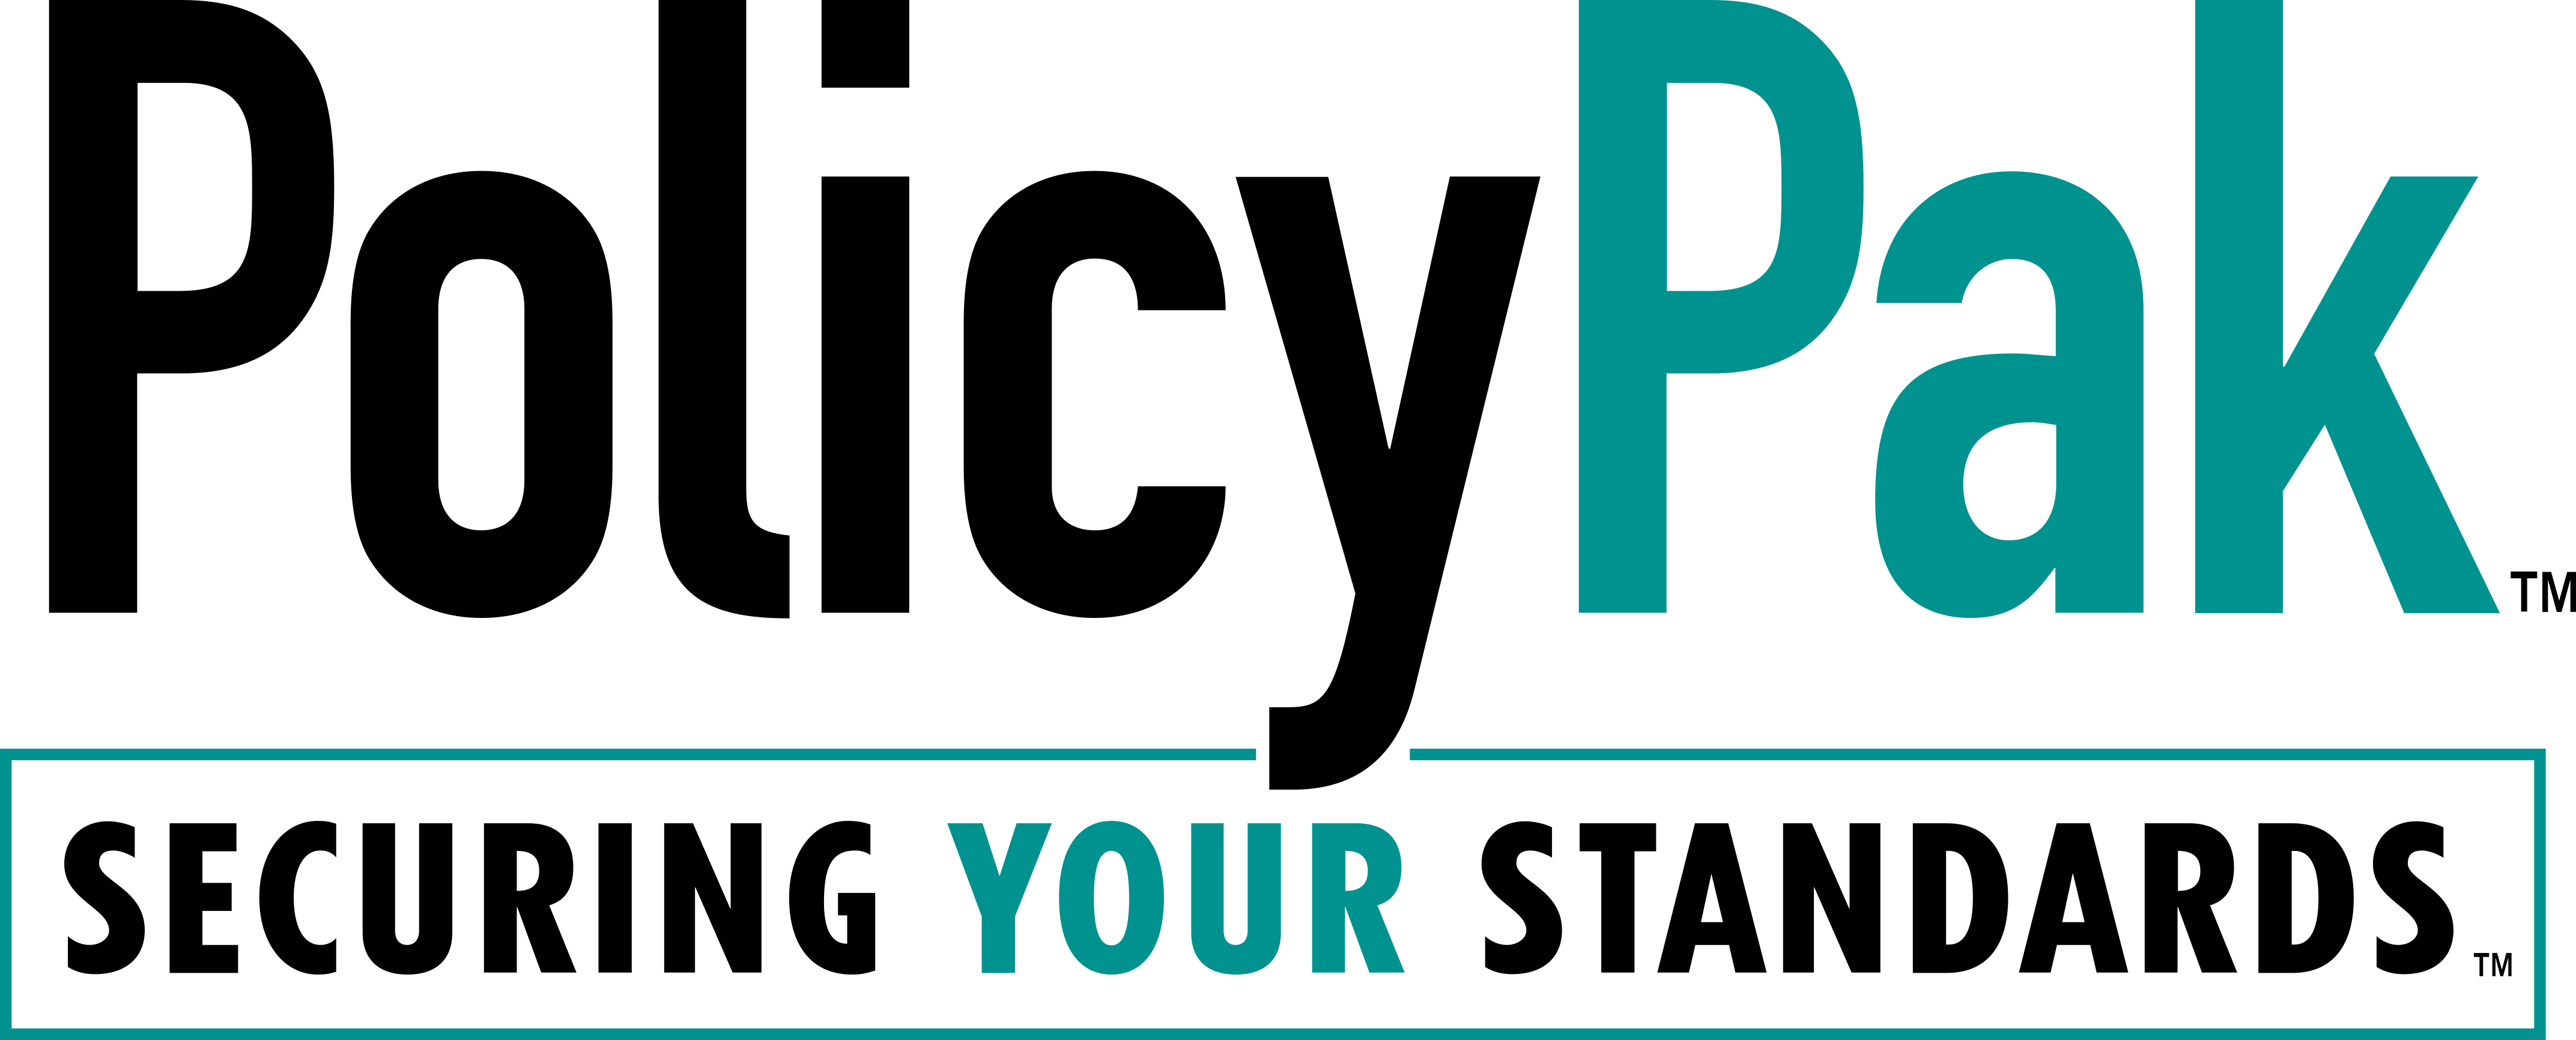 policypak_logo